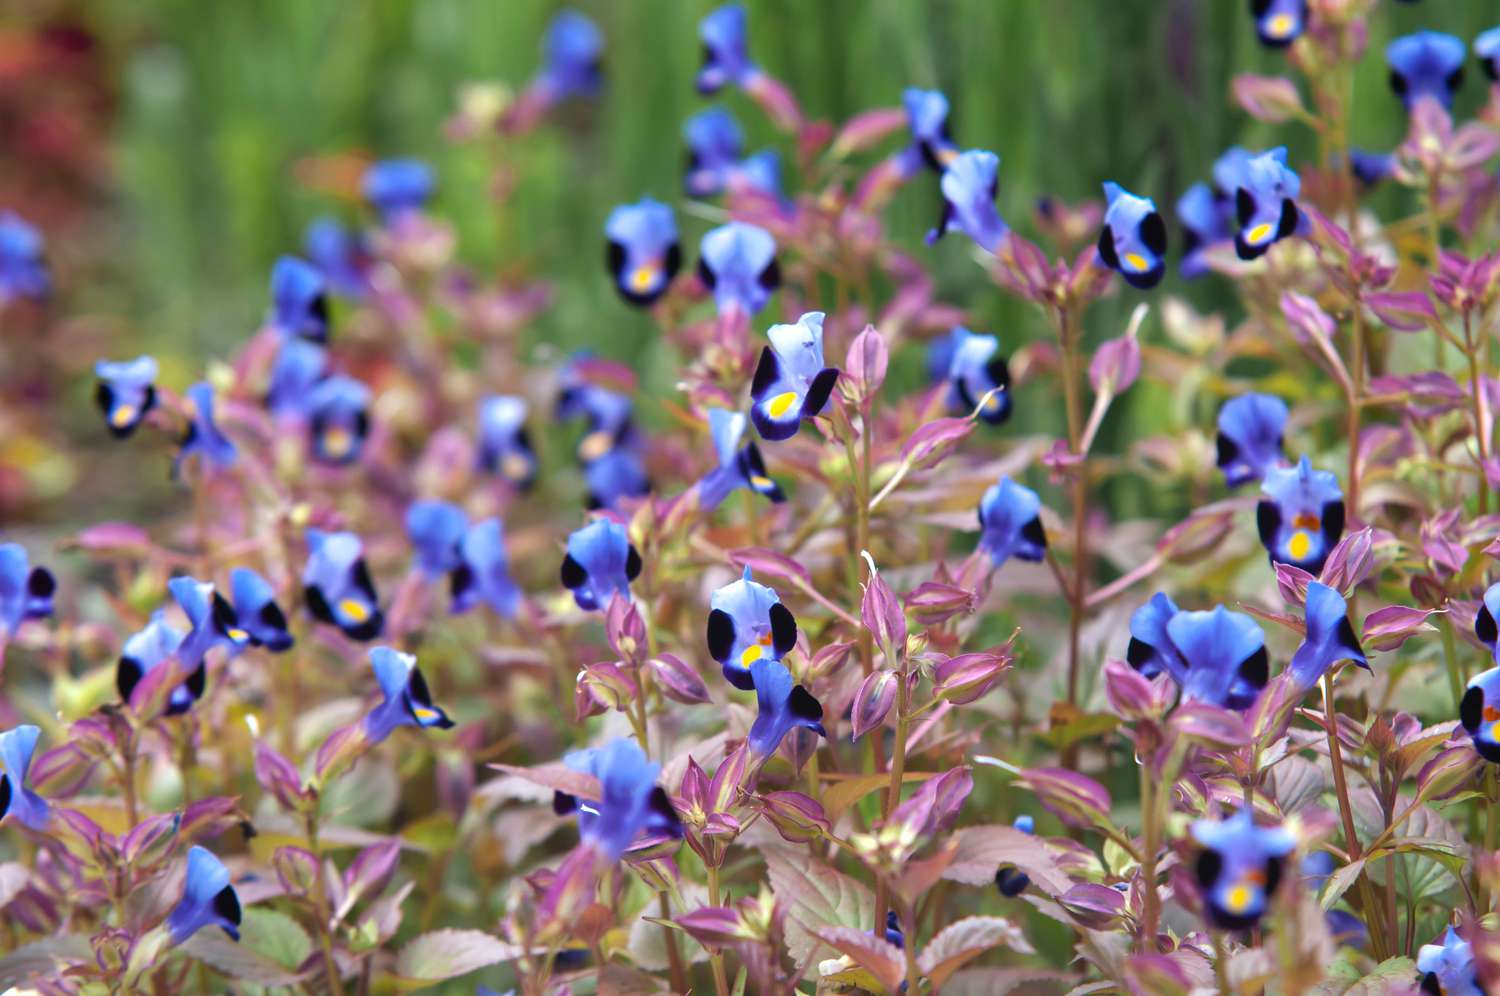 Torenia-Pflanze mit kleinen blau-violetten und schwarzen Blüten auf dünnen Stängeln mit rosa Blättern